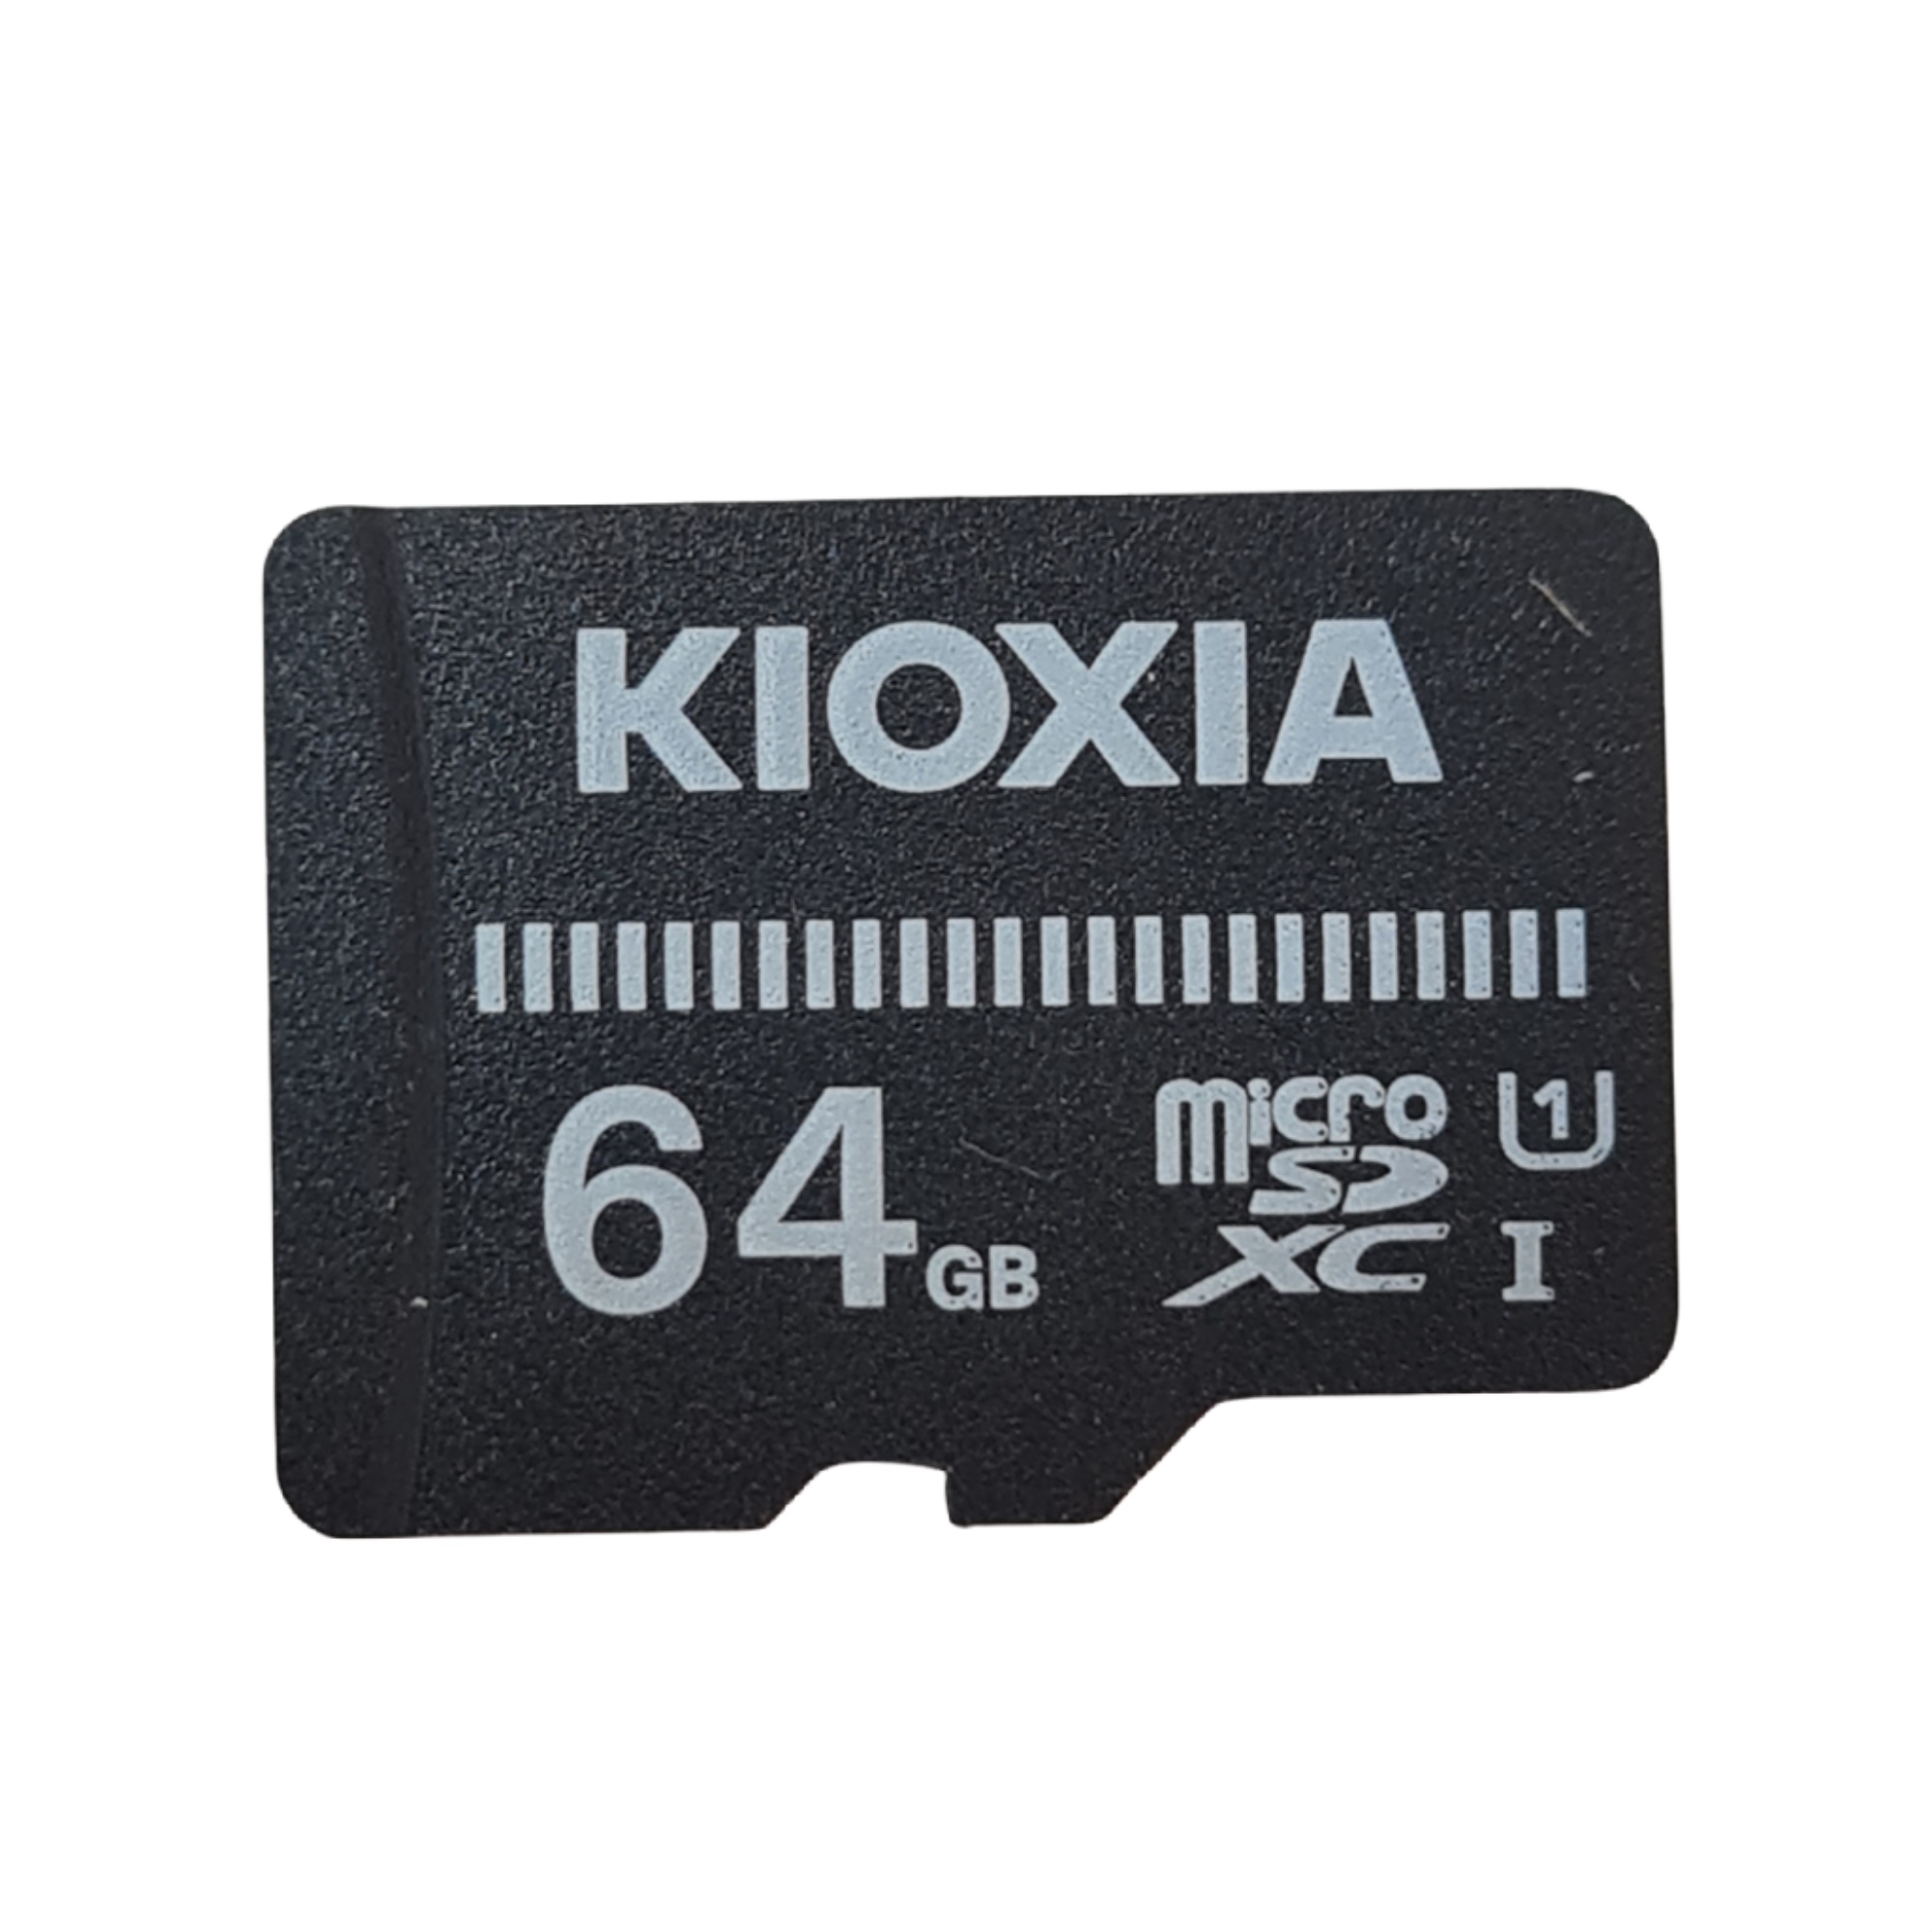 کارت حافظه MICROSD کیوکسیا مدل XCI کلاس 10 استاندارد UHS-I U1 سرعت 100MBps ظرفیت 64 گیگابایت